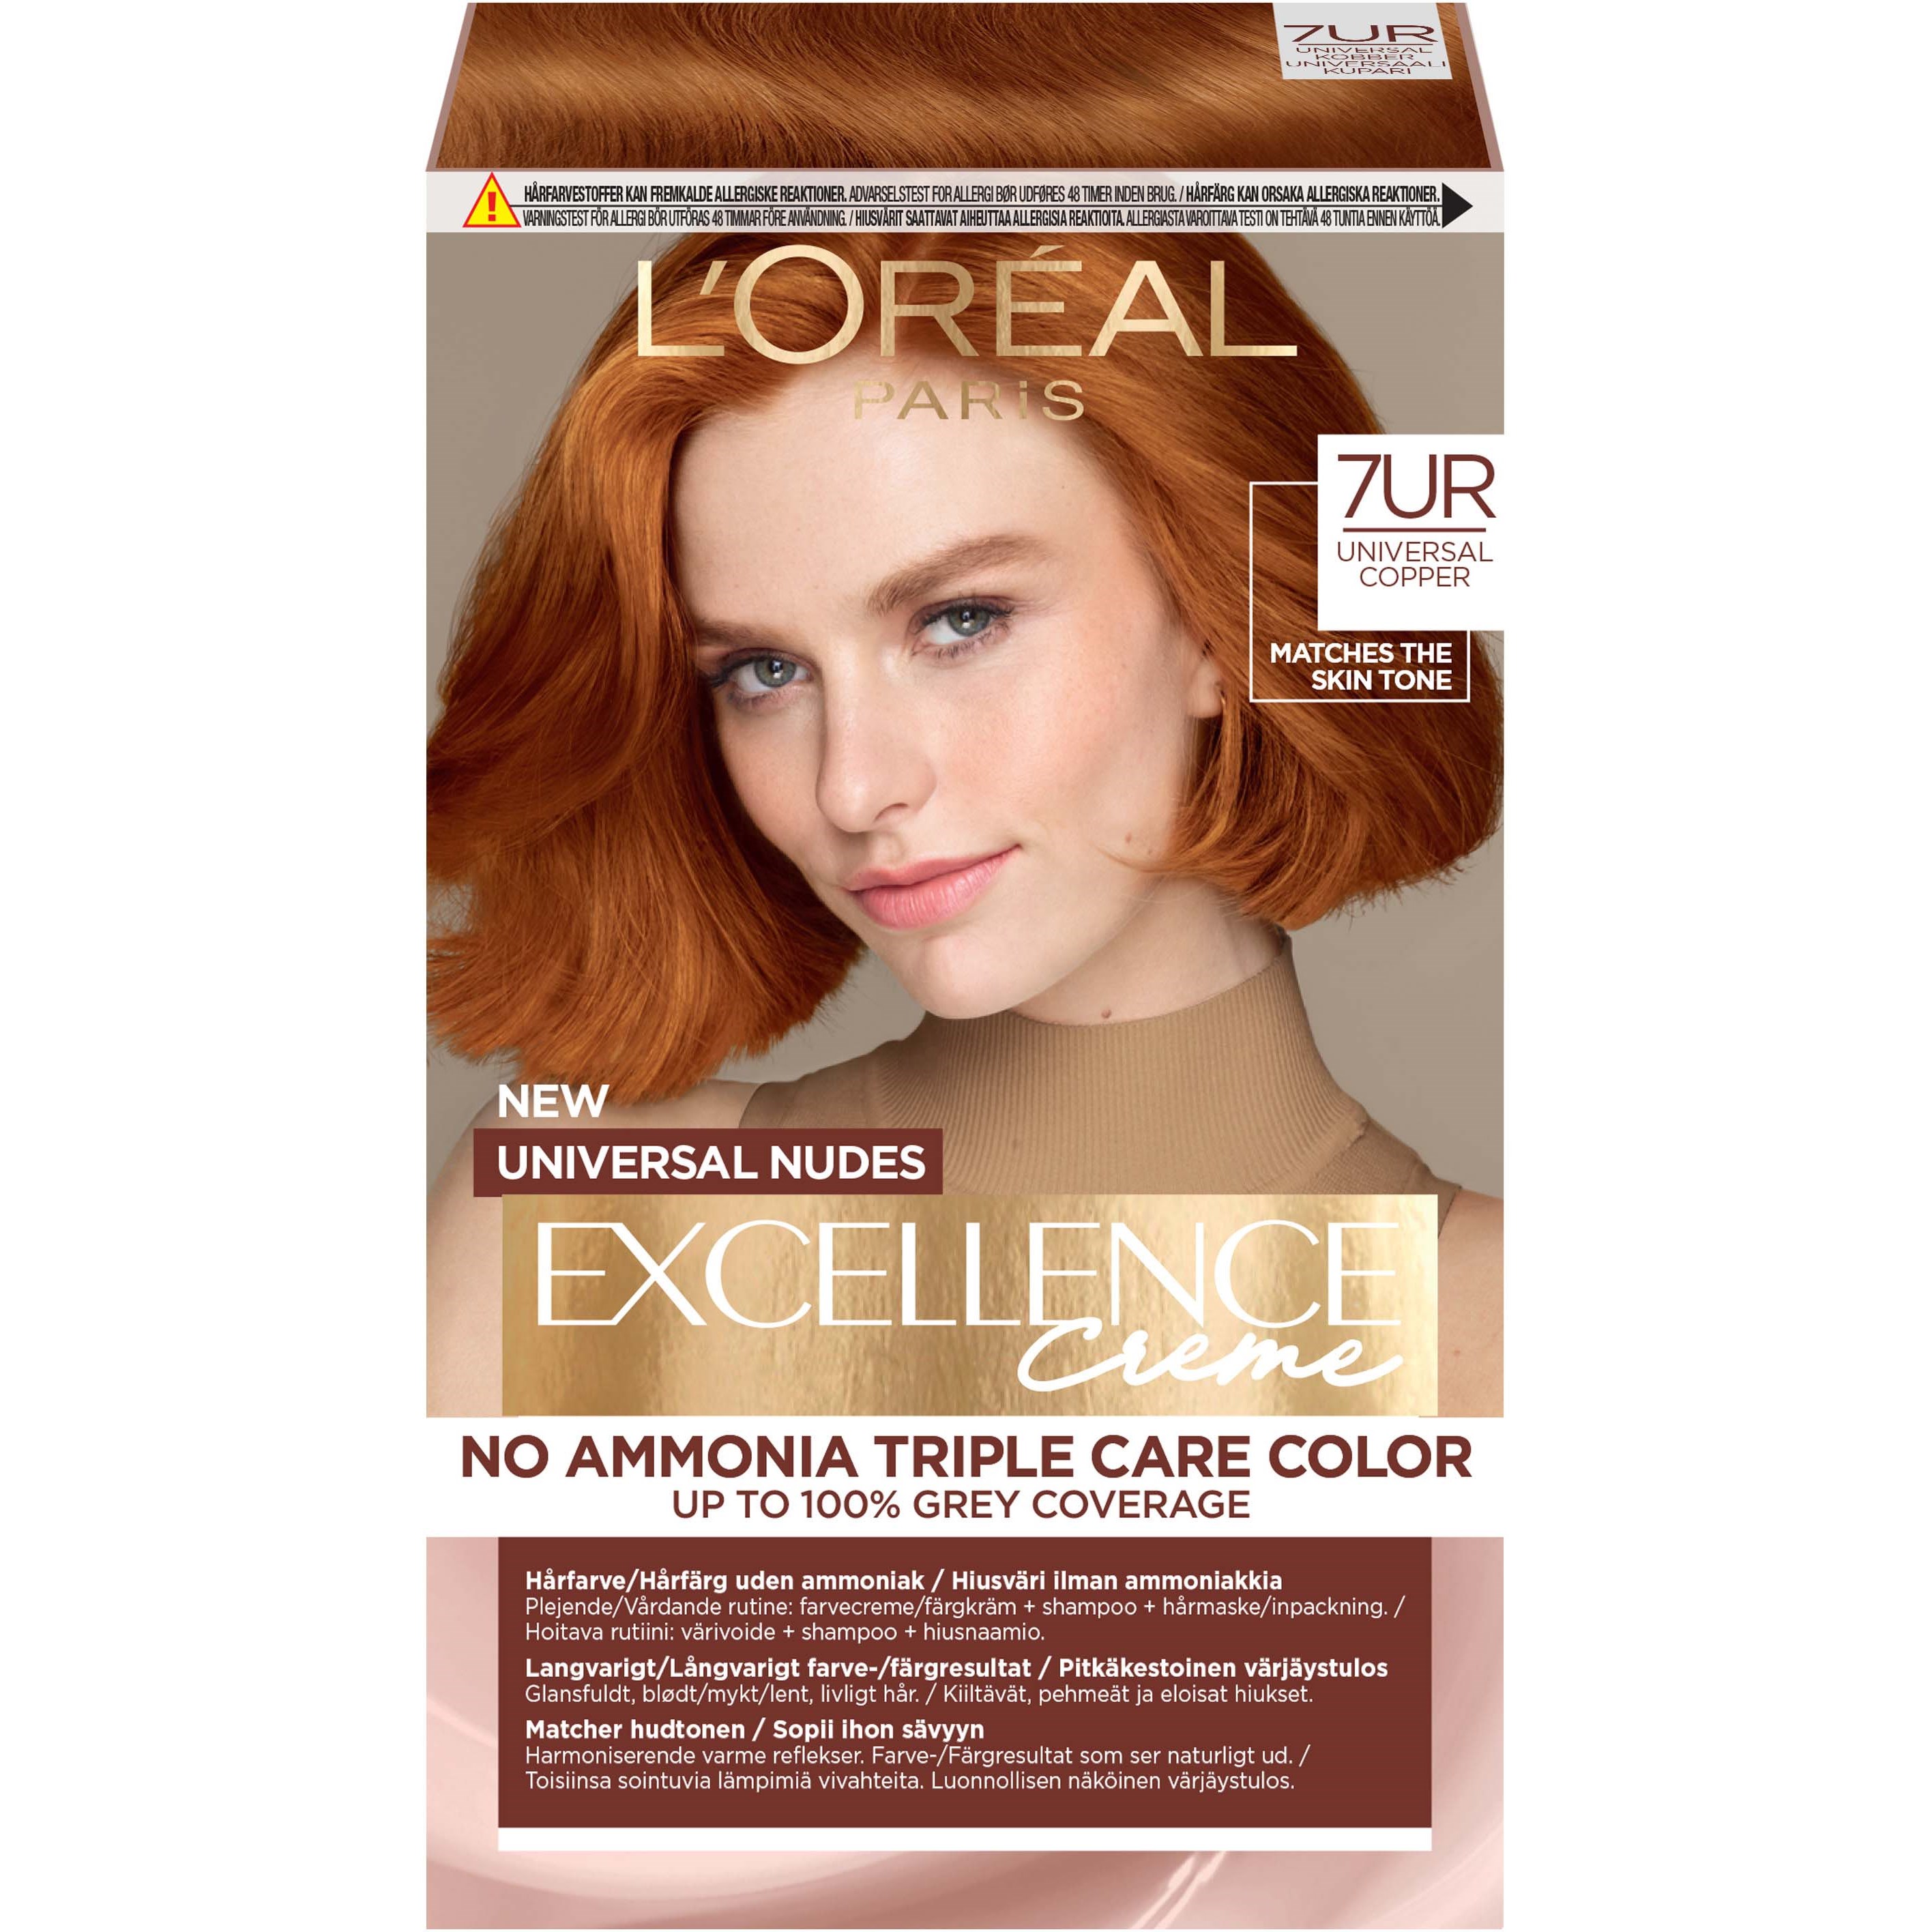 Bilde av Loreal Paris Excellence Crème Universal Nudes Hair Color 7ur Universal